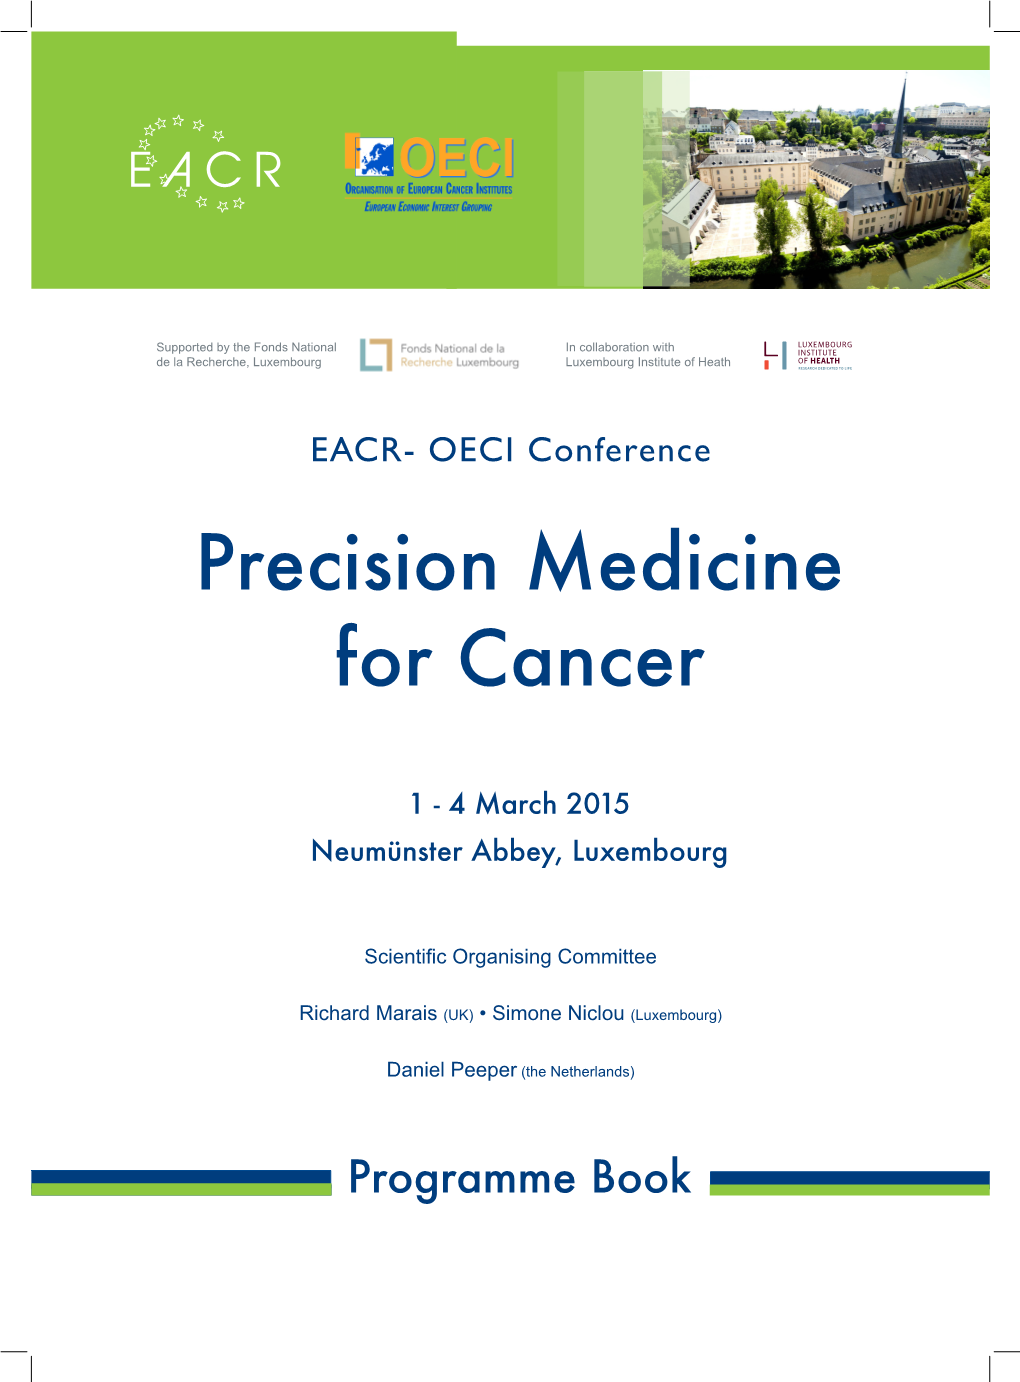 Precision Medicine for Cancer